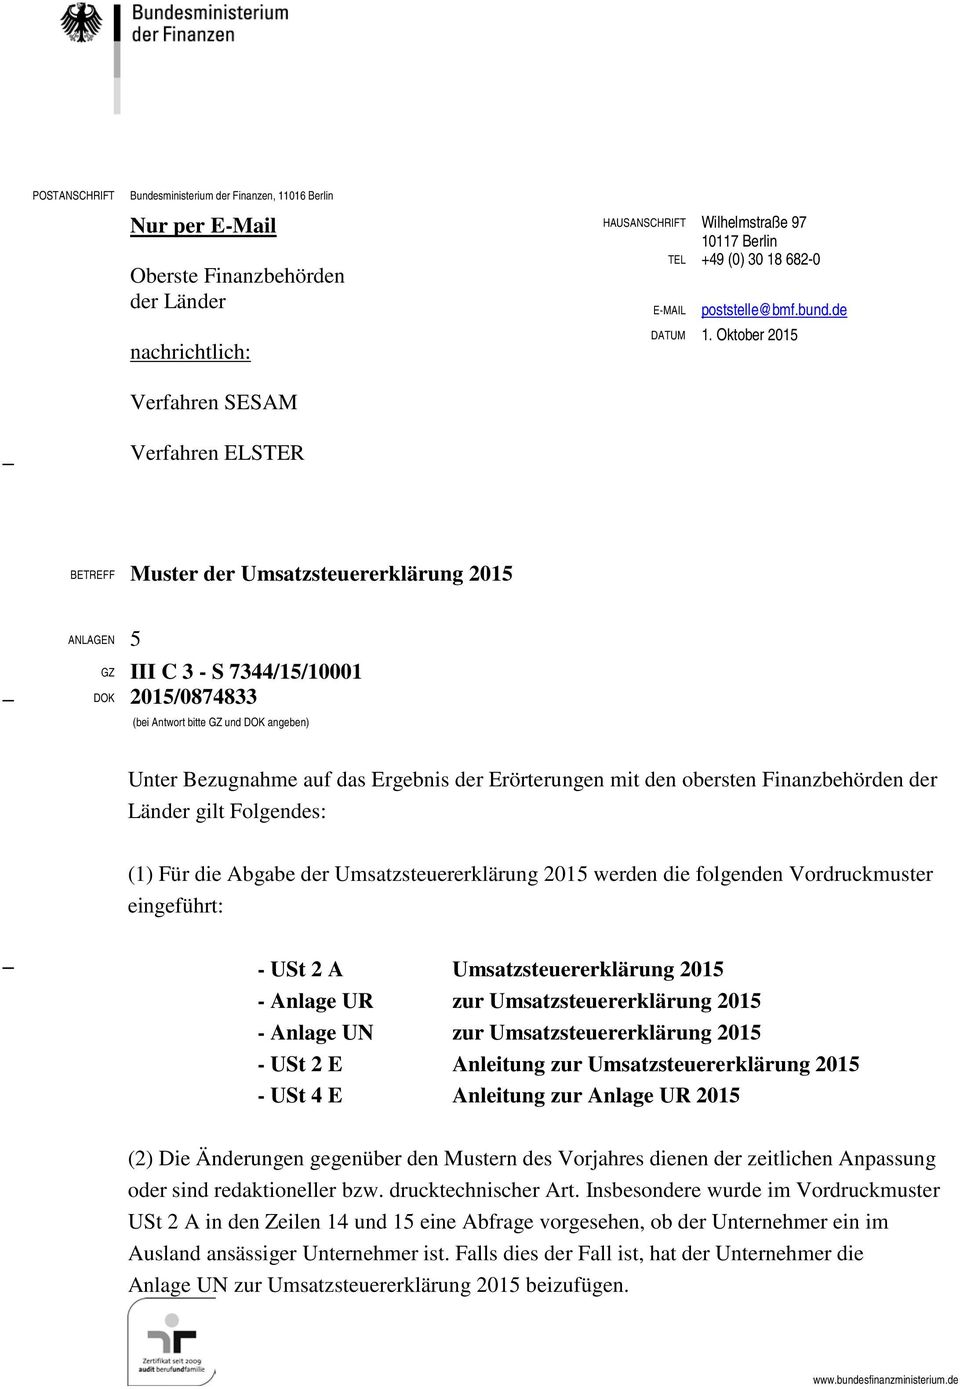 Oktober 2015 Verfahren SESAM Verfahren ELSTER BETREFF Muster der Umsatzsteuererklärung 2015 ANLAGEN 5 GZ III C 3 - S 7344/15/10001 DOK 2015/0874833 (bei Antwort bitte GZ und DOK angeben) Unter